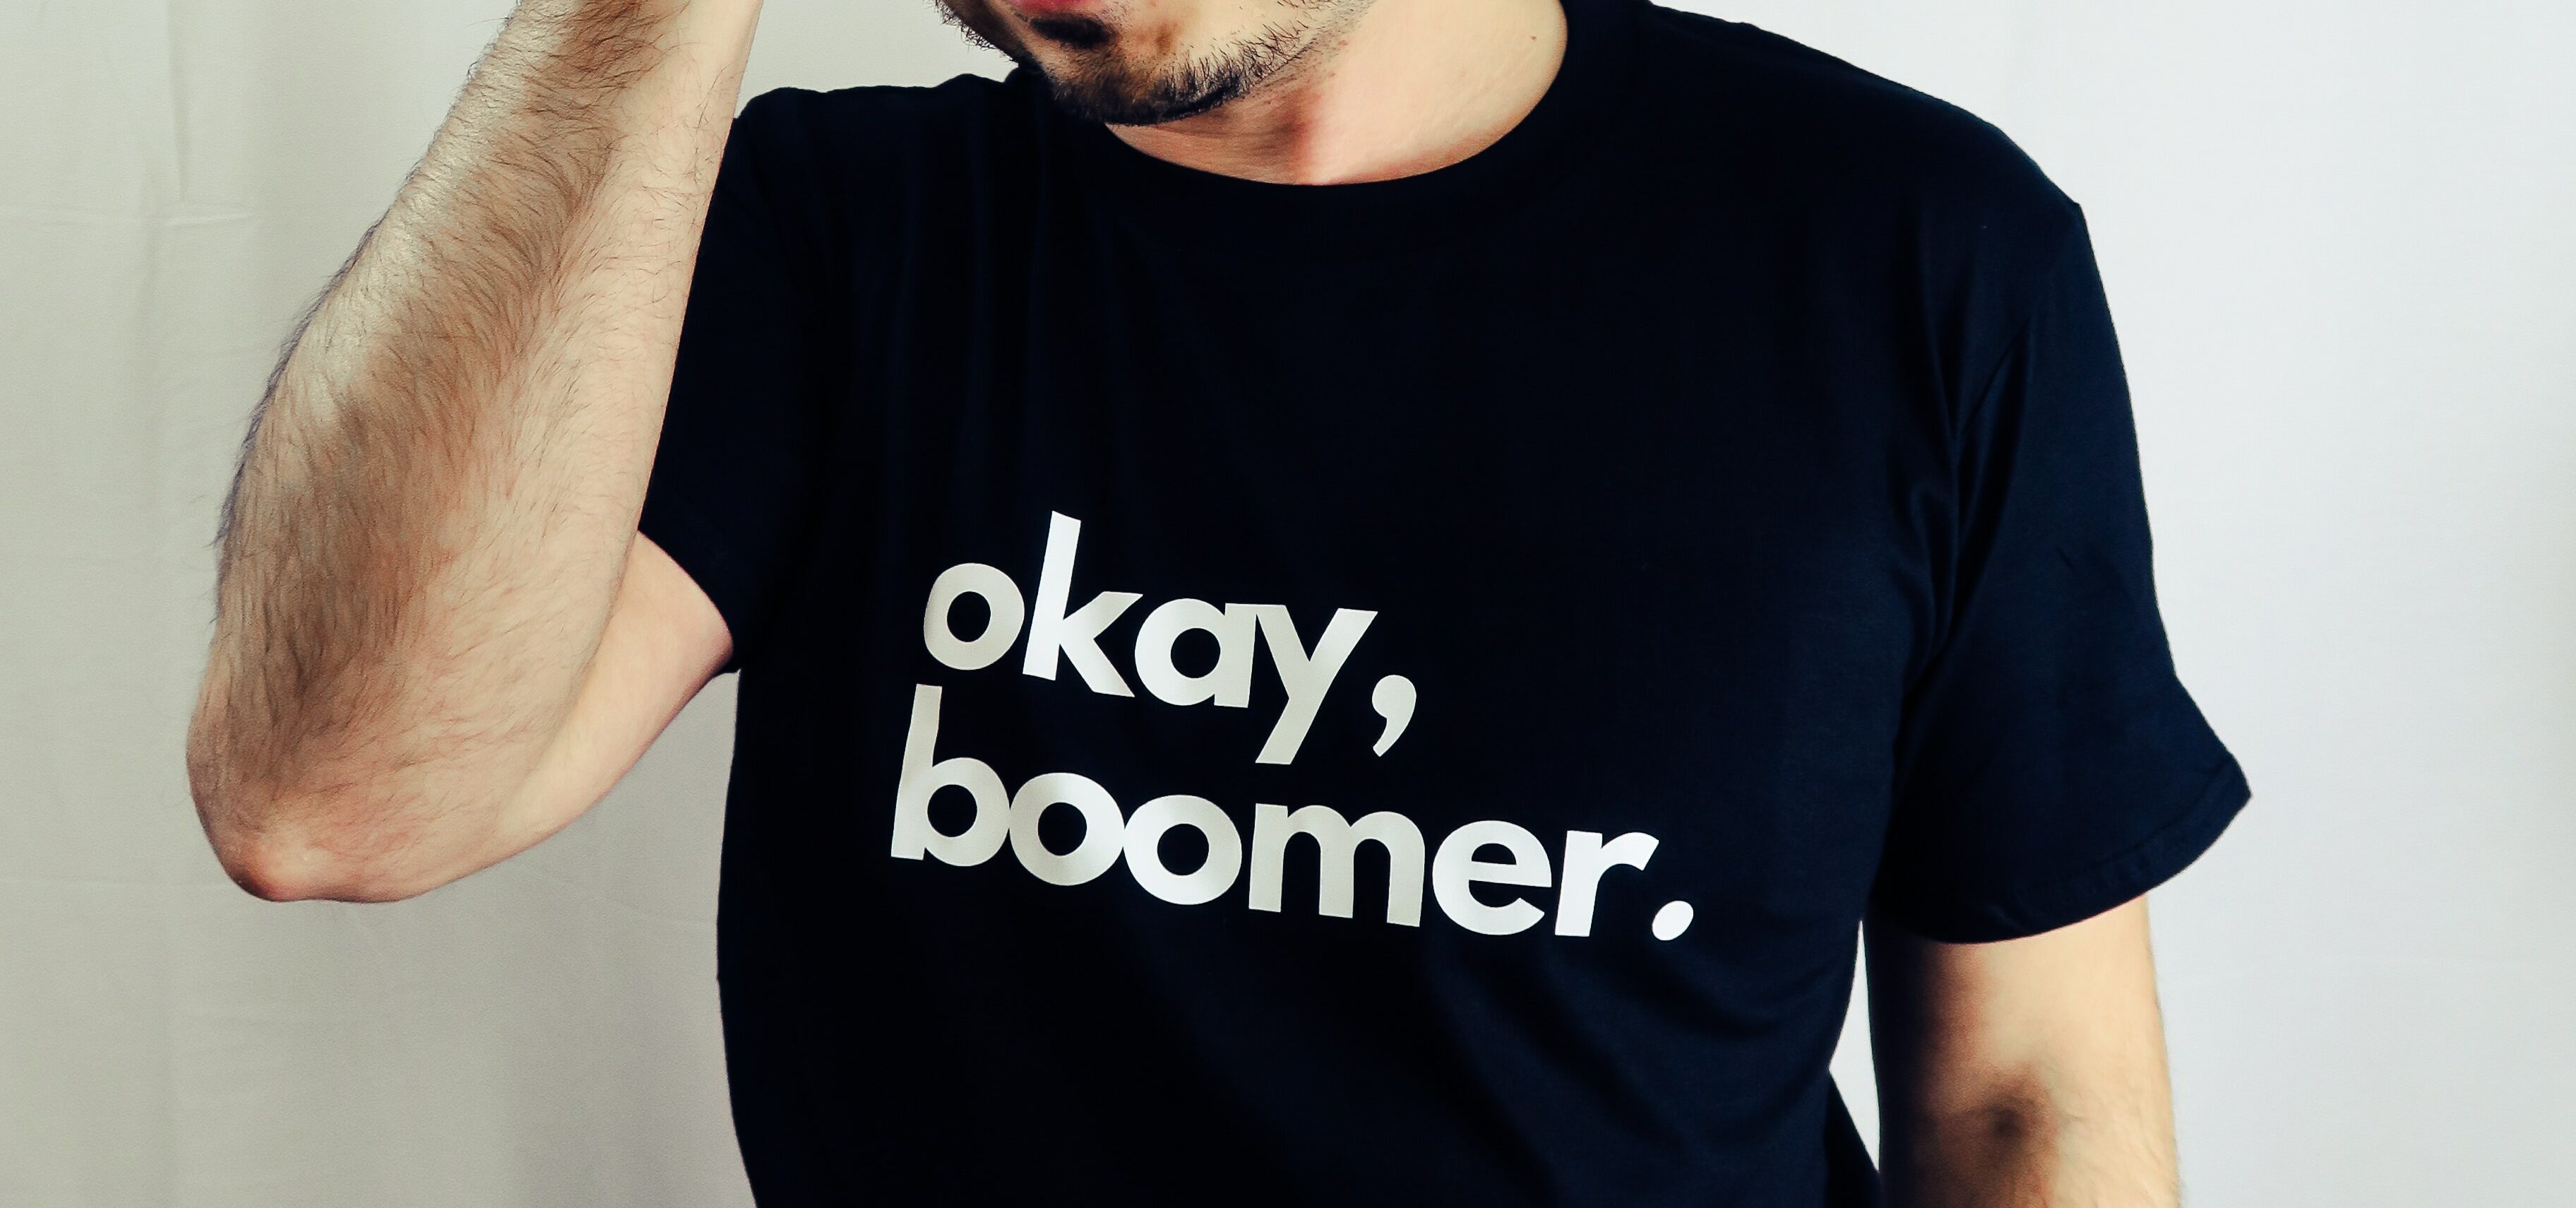 Mann med t-skjorte med teksten: "Okay, boomer"